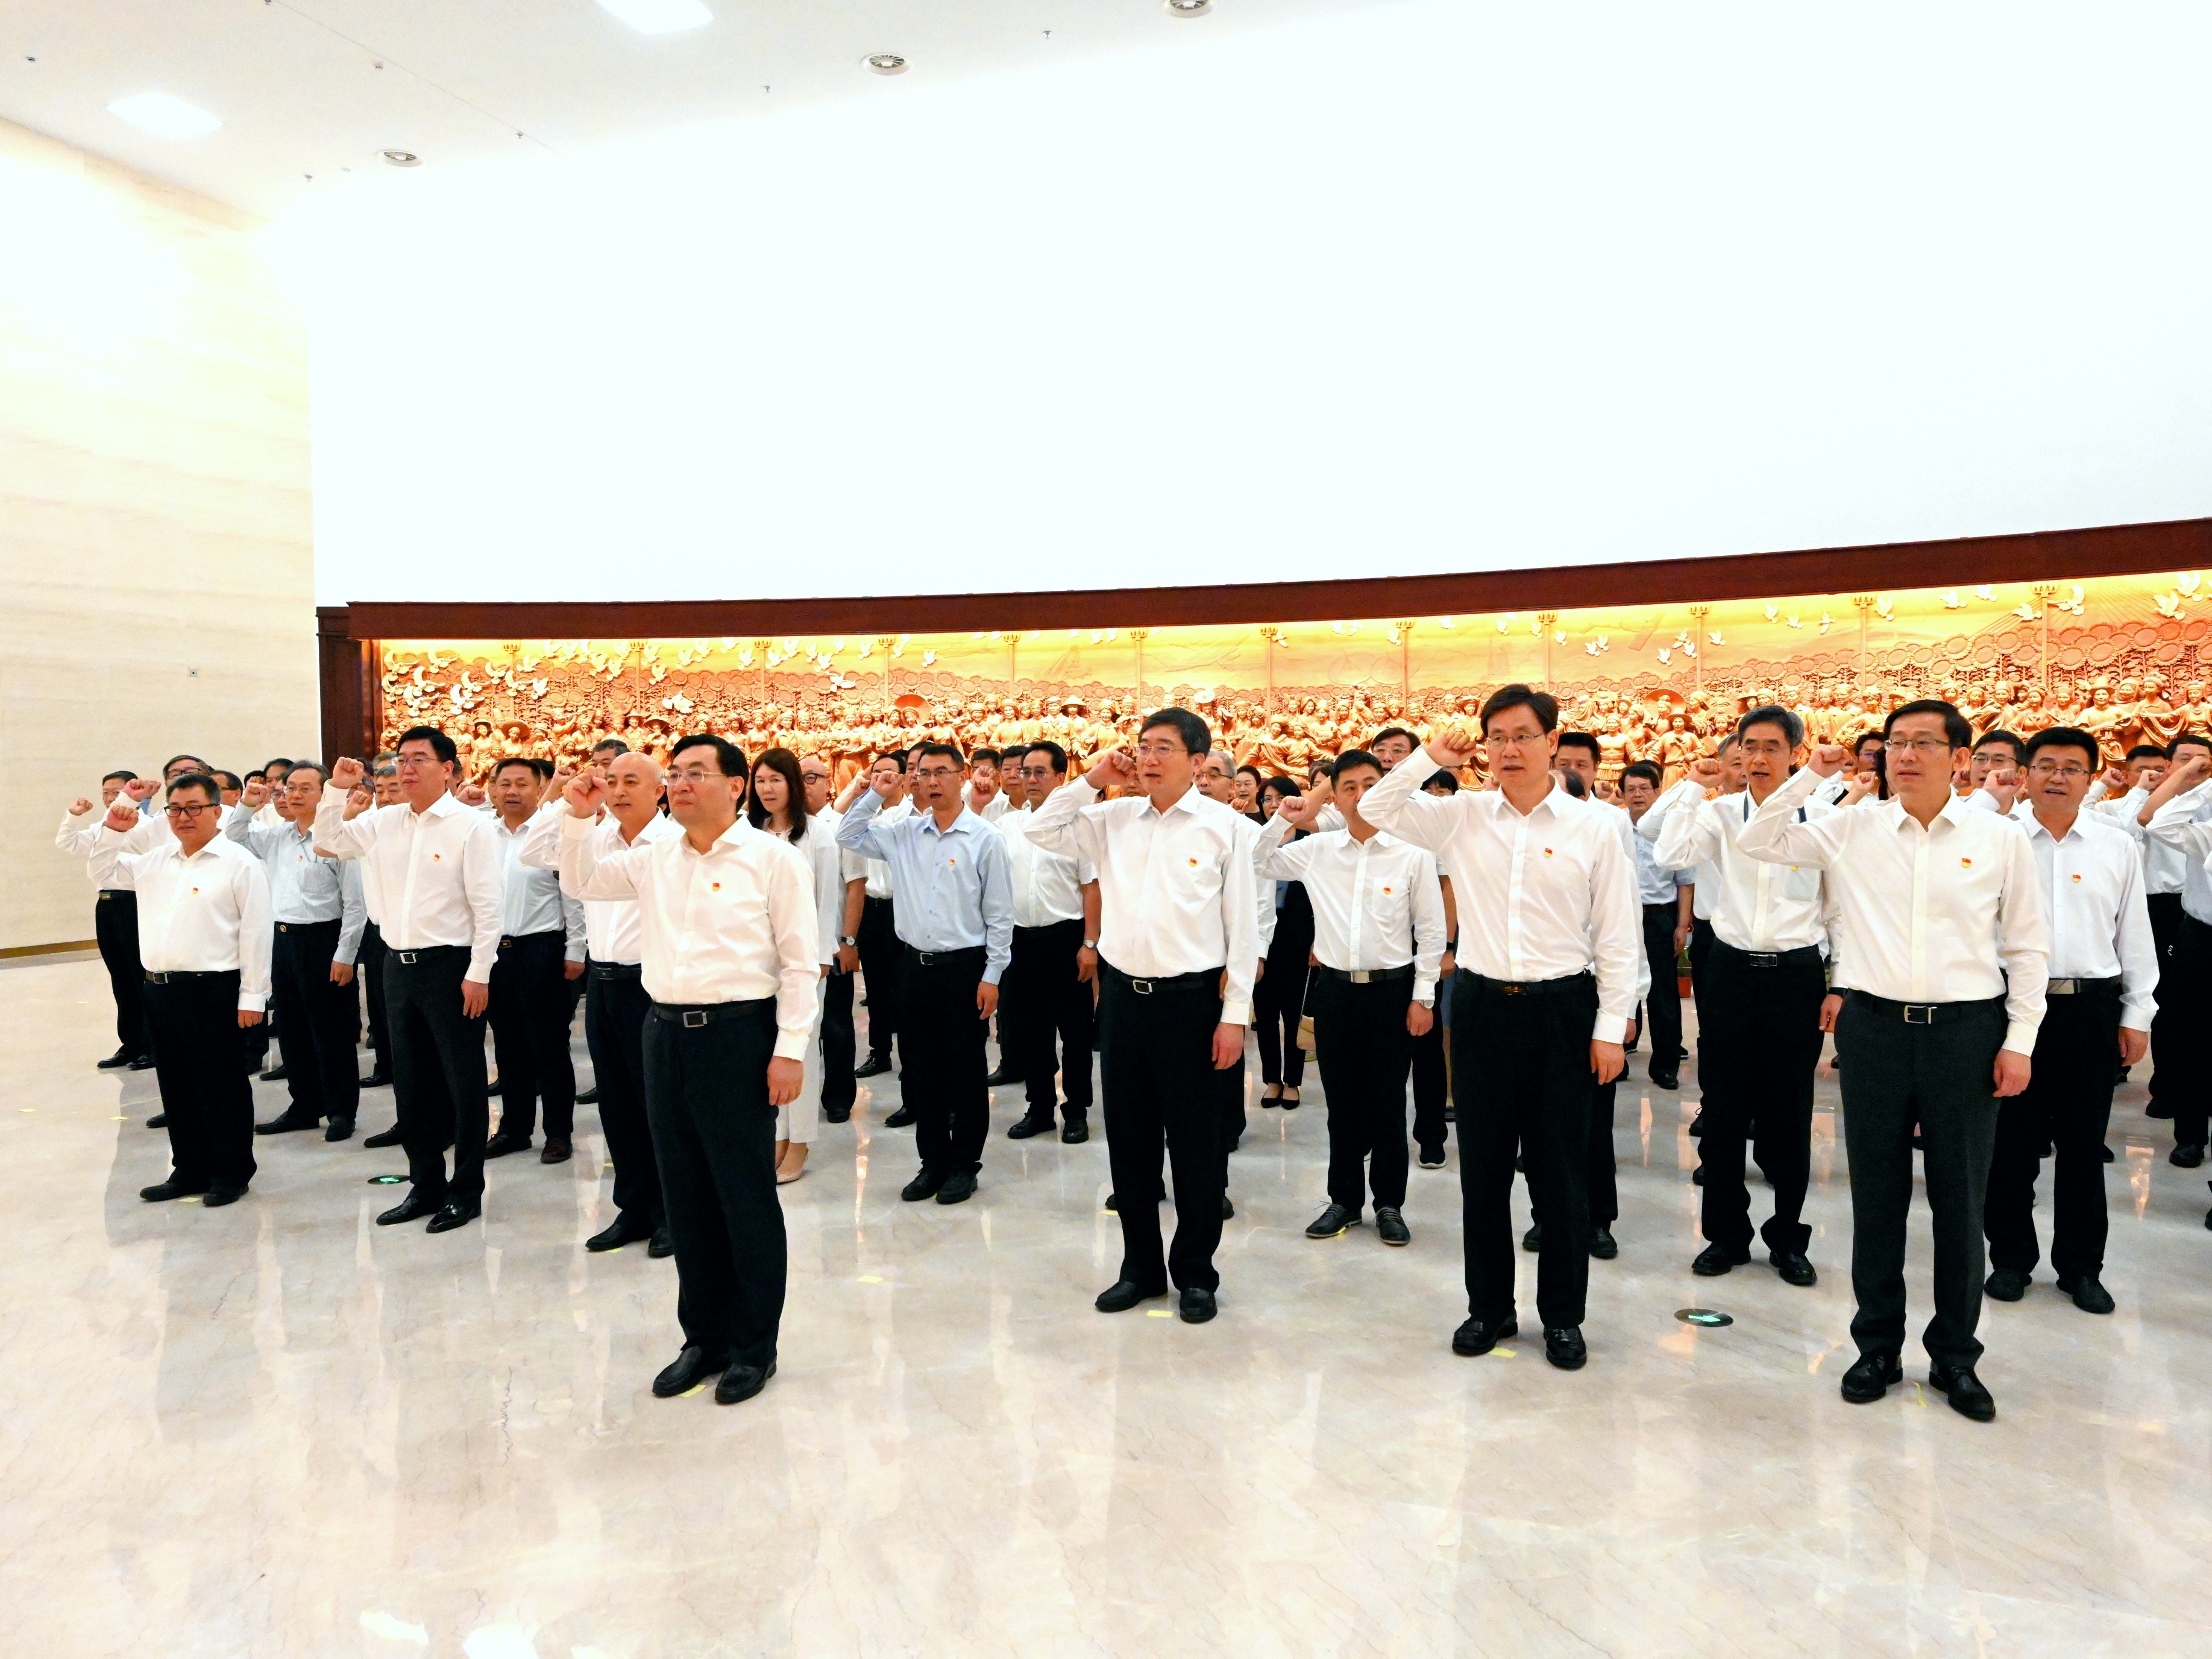 文化和旅游部组织领导干部参观中国共产党历史展览